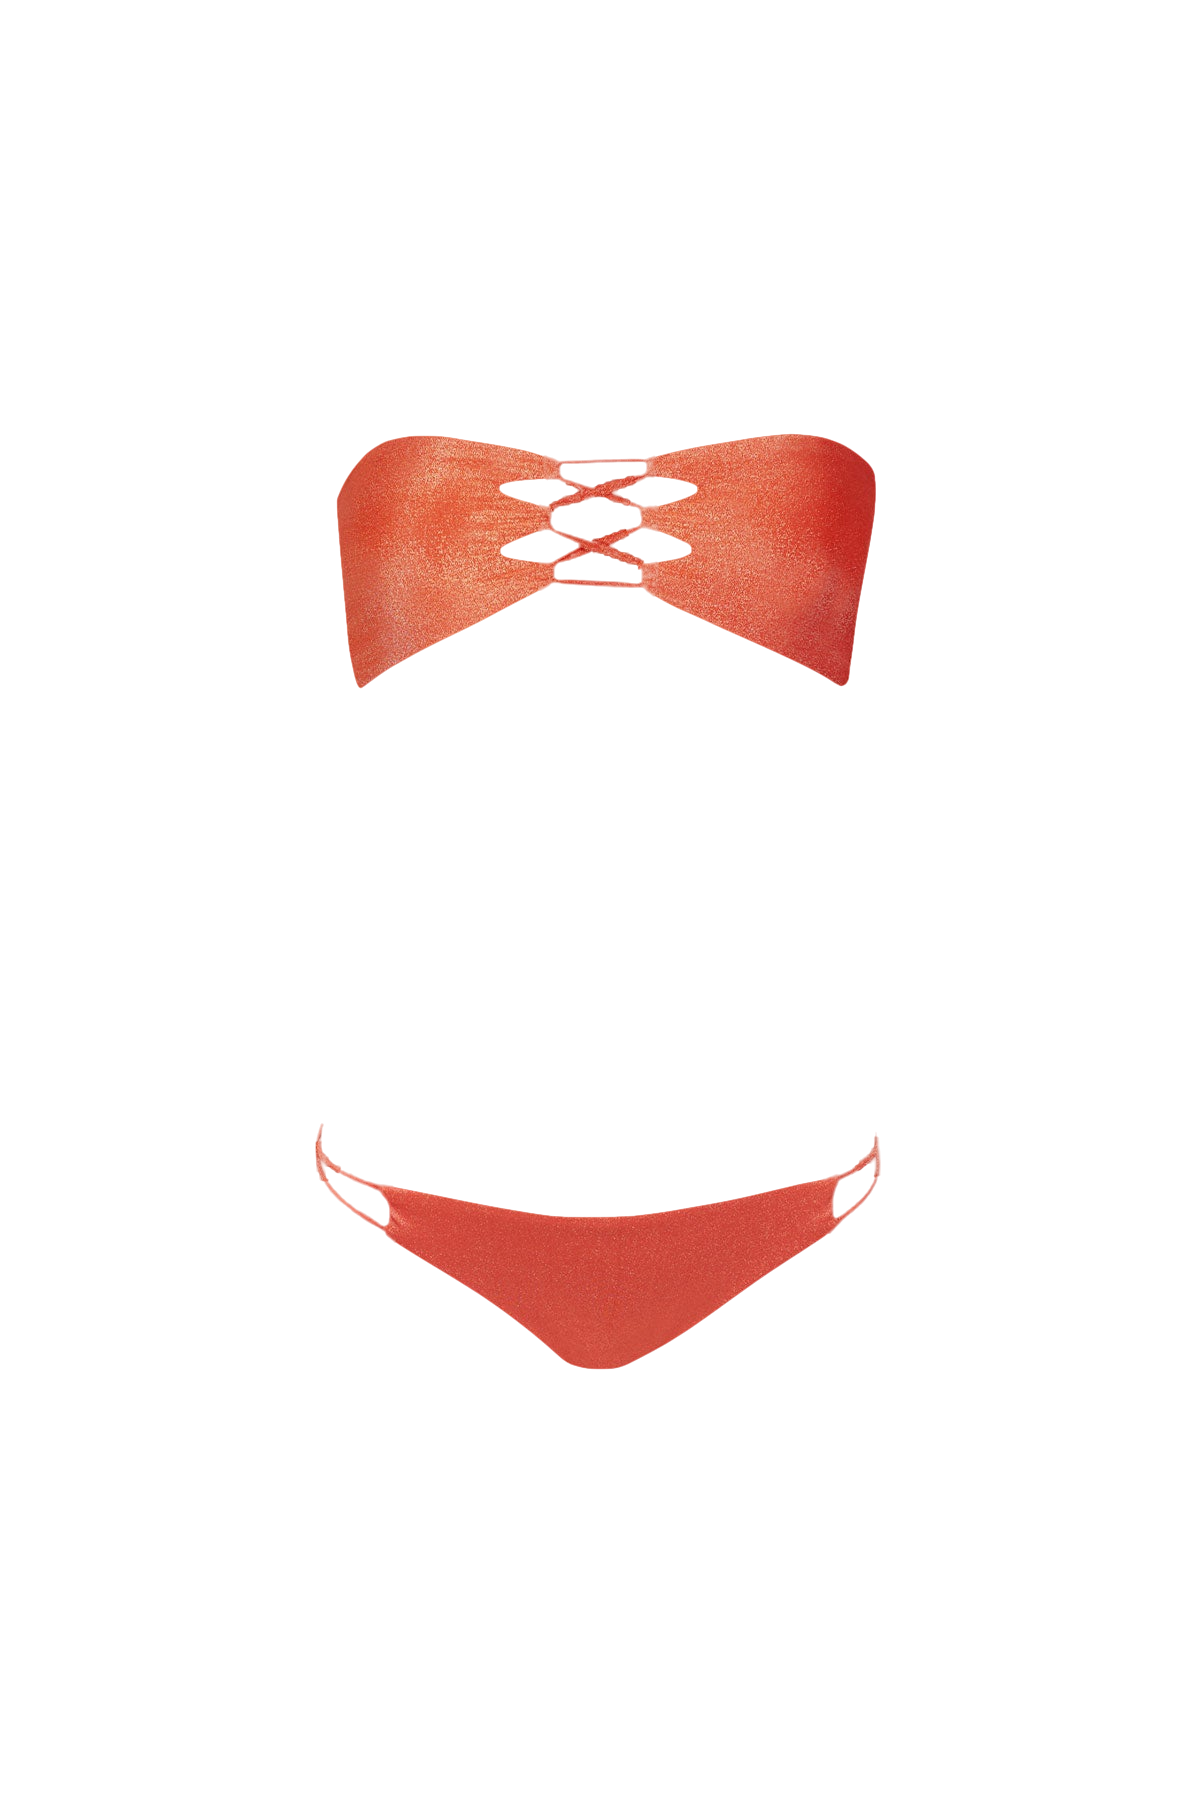 Sara Cristina Hava Bikini In Shiny Orange